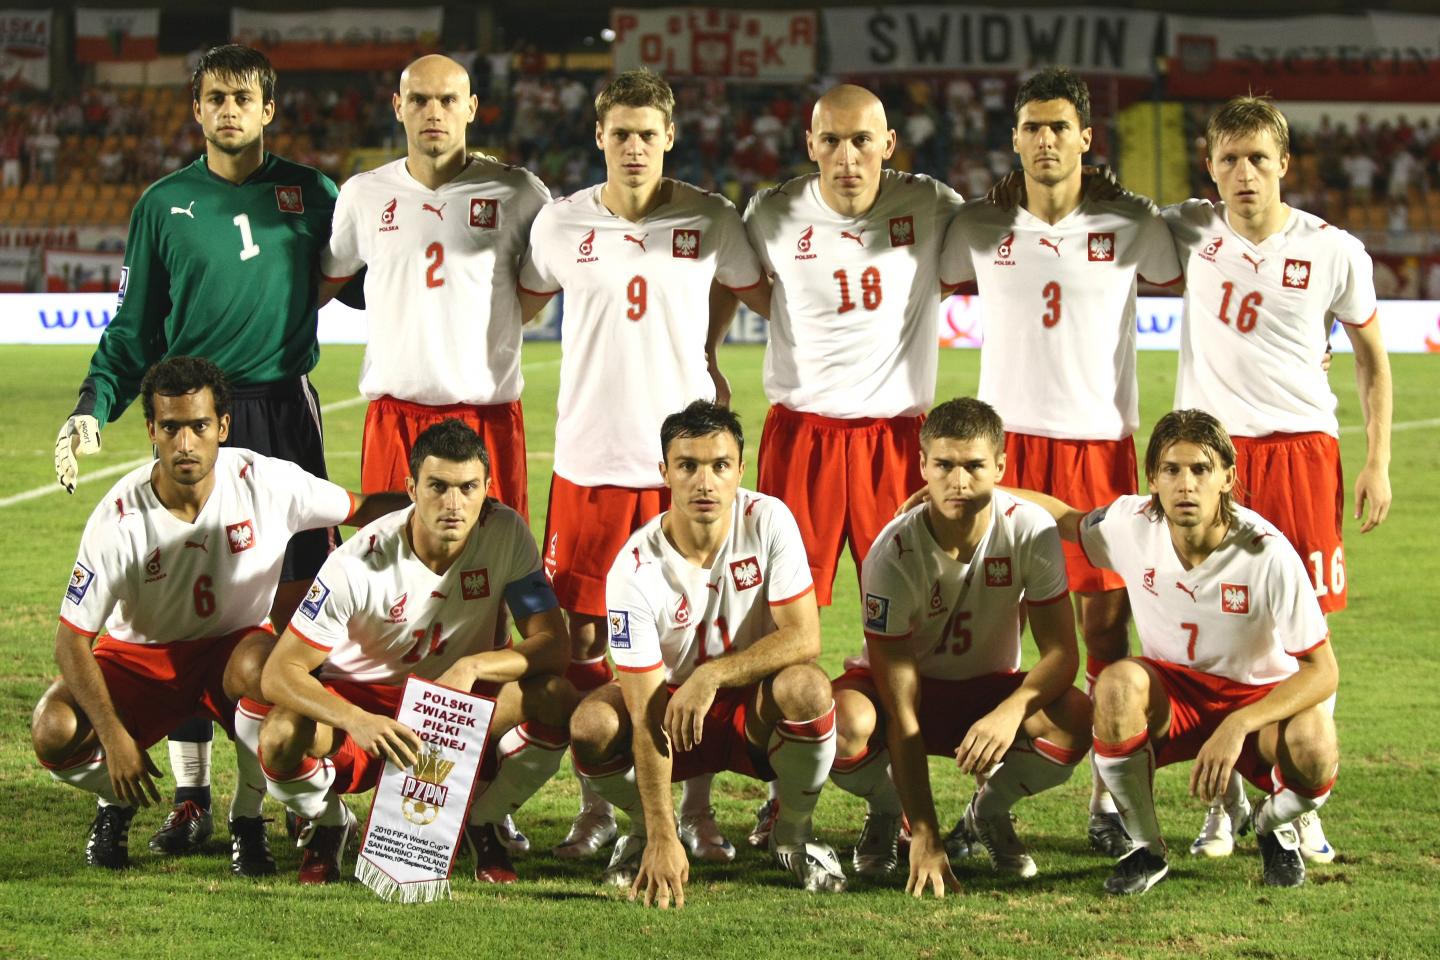 Wyjściowy skład reprezentacji Polski w meczu z San Marino.